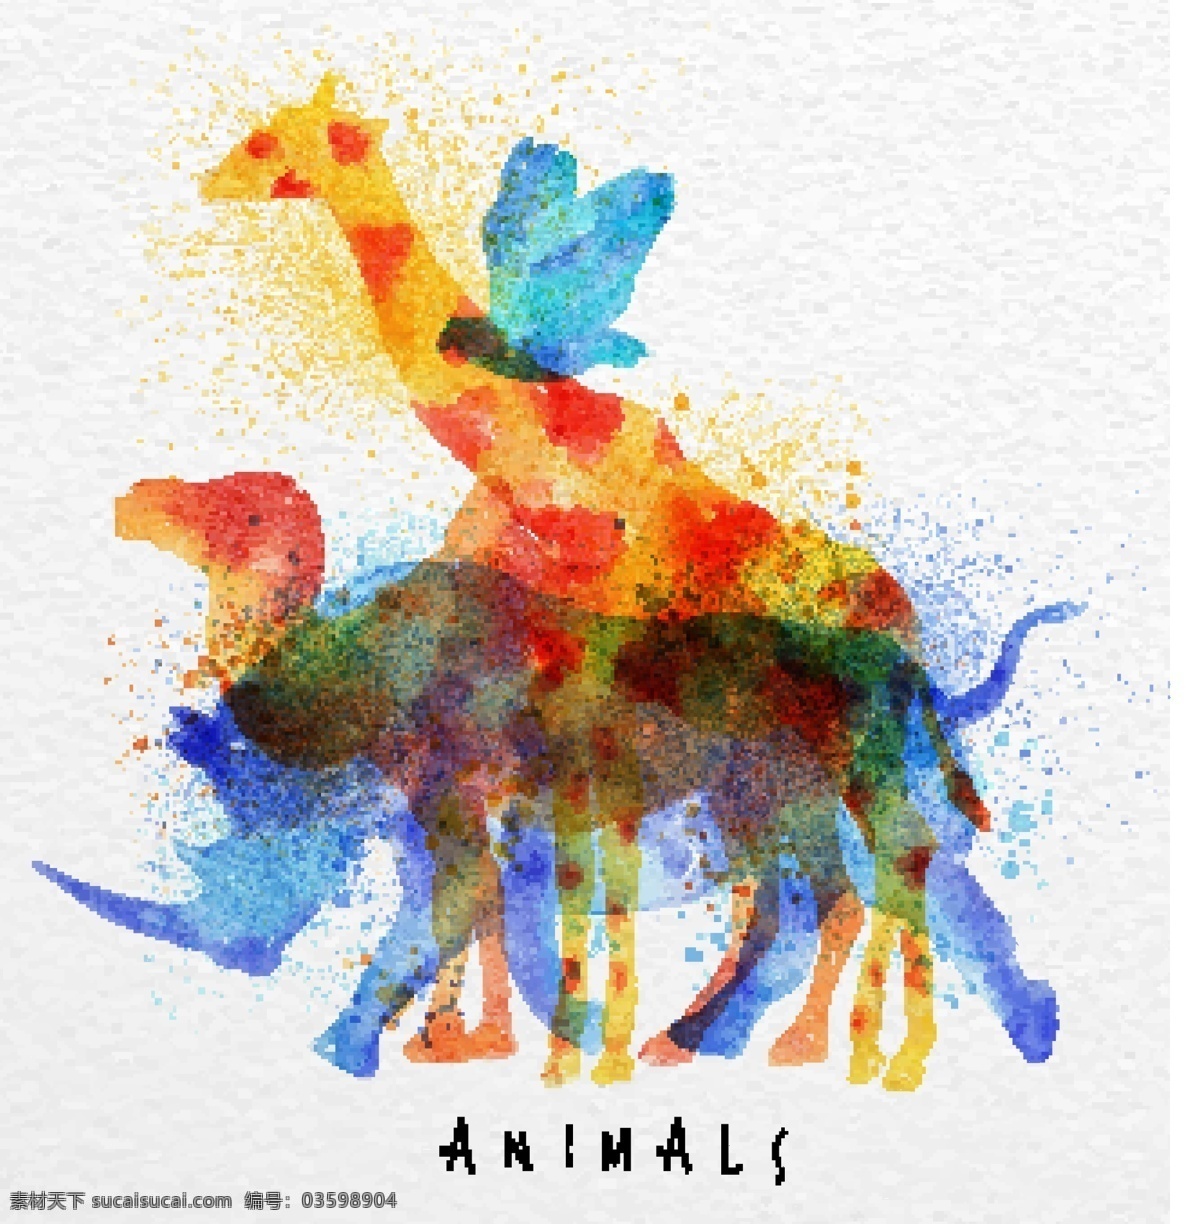 卡通 水彩 动物 组合 矢量 色彩 装饰素材 创意设计 设计元素素材 水墨